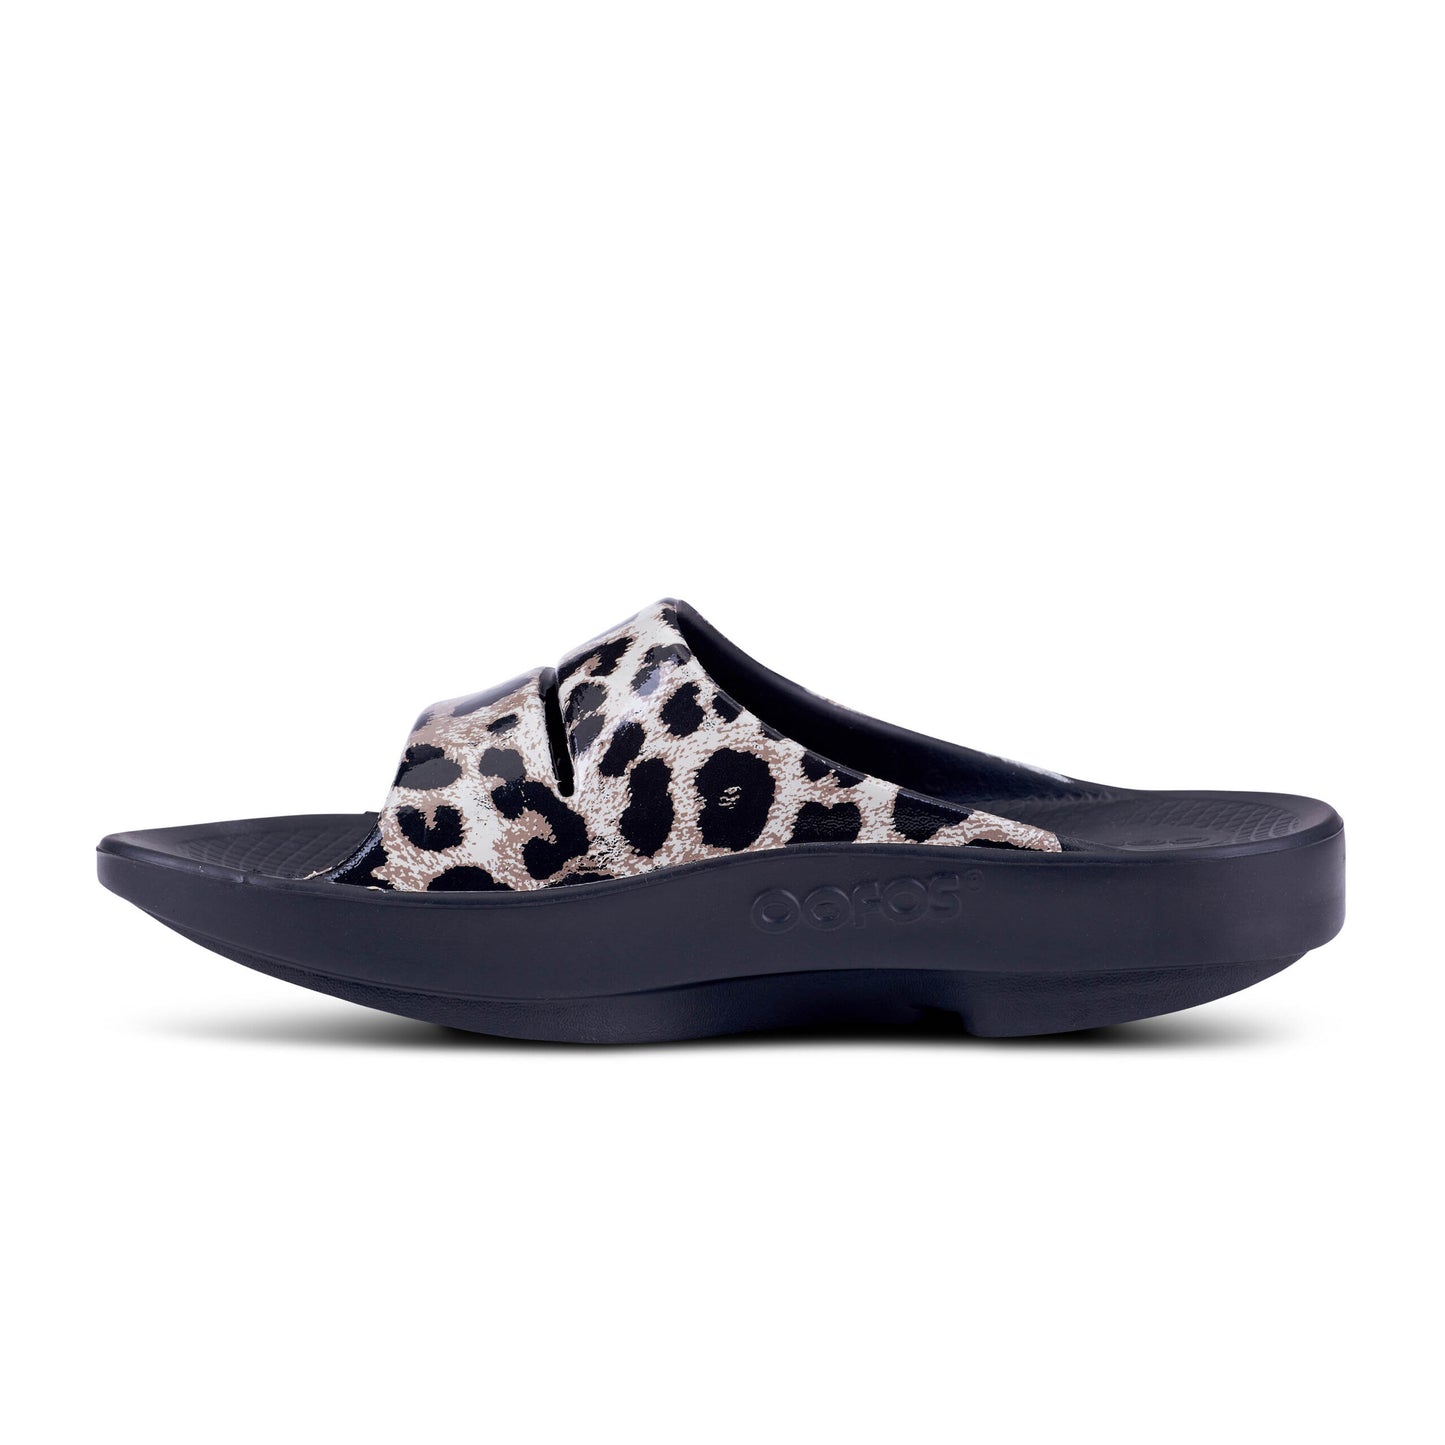 OOFOS OOahh Limited Women's Black Cheetah print slide sandal1103BLKCHEET